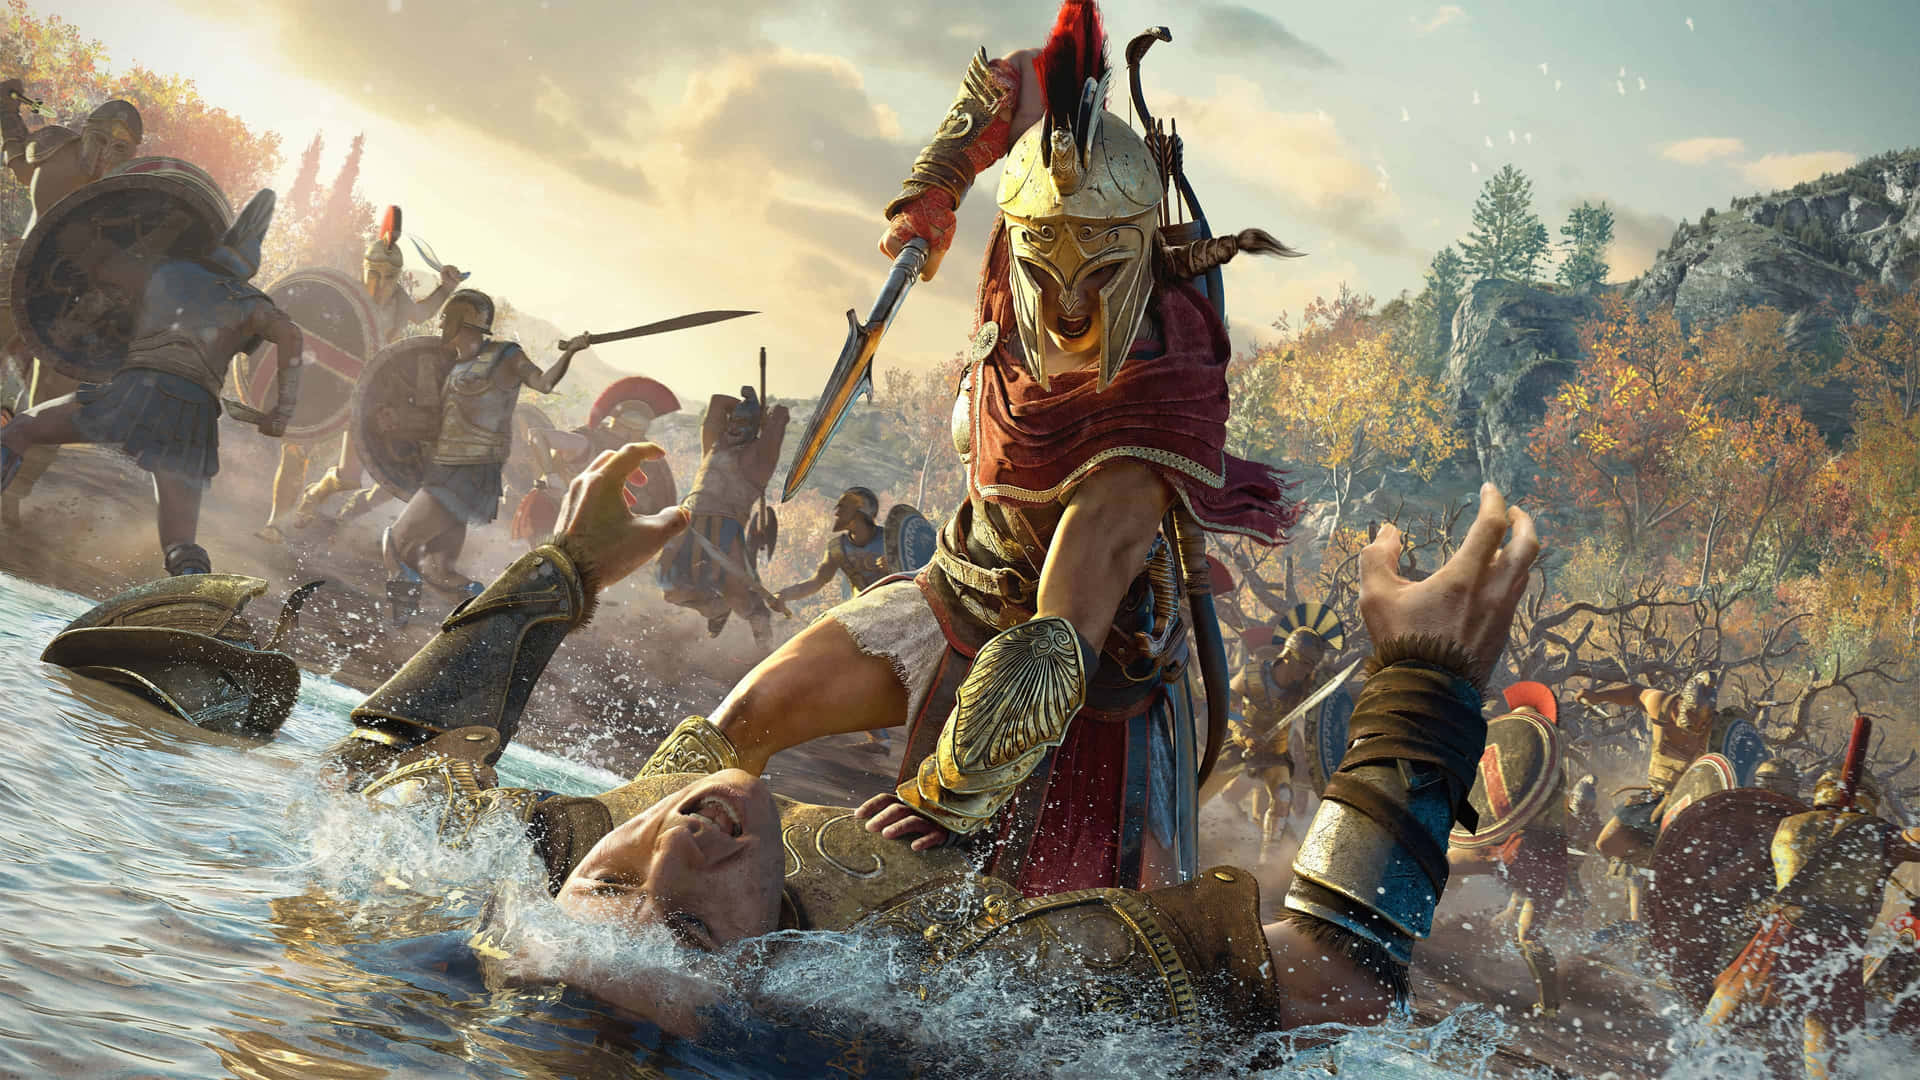 Tauchensie In Das Abenteuer Ein Mit 4k Assassin's Creed Odyssey.